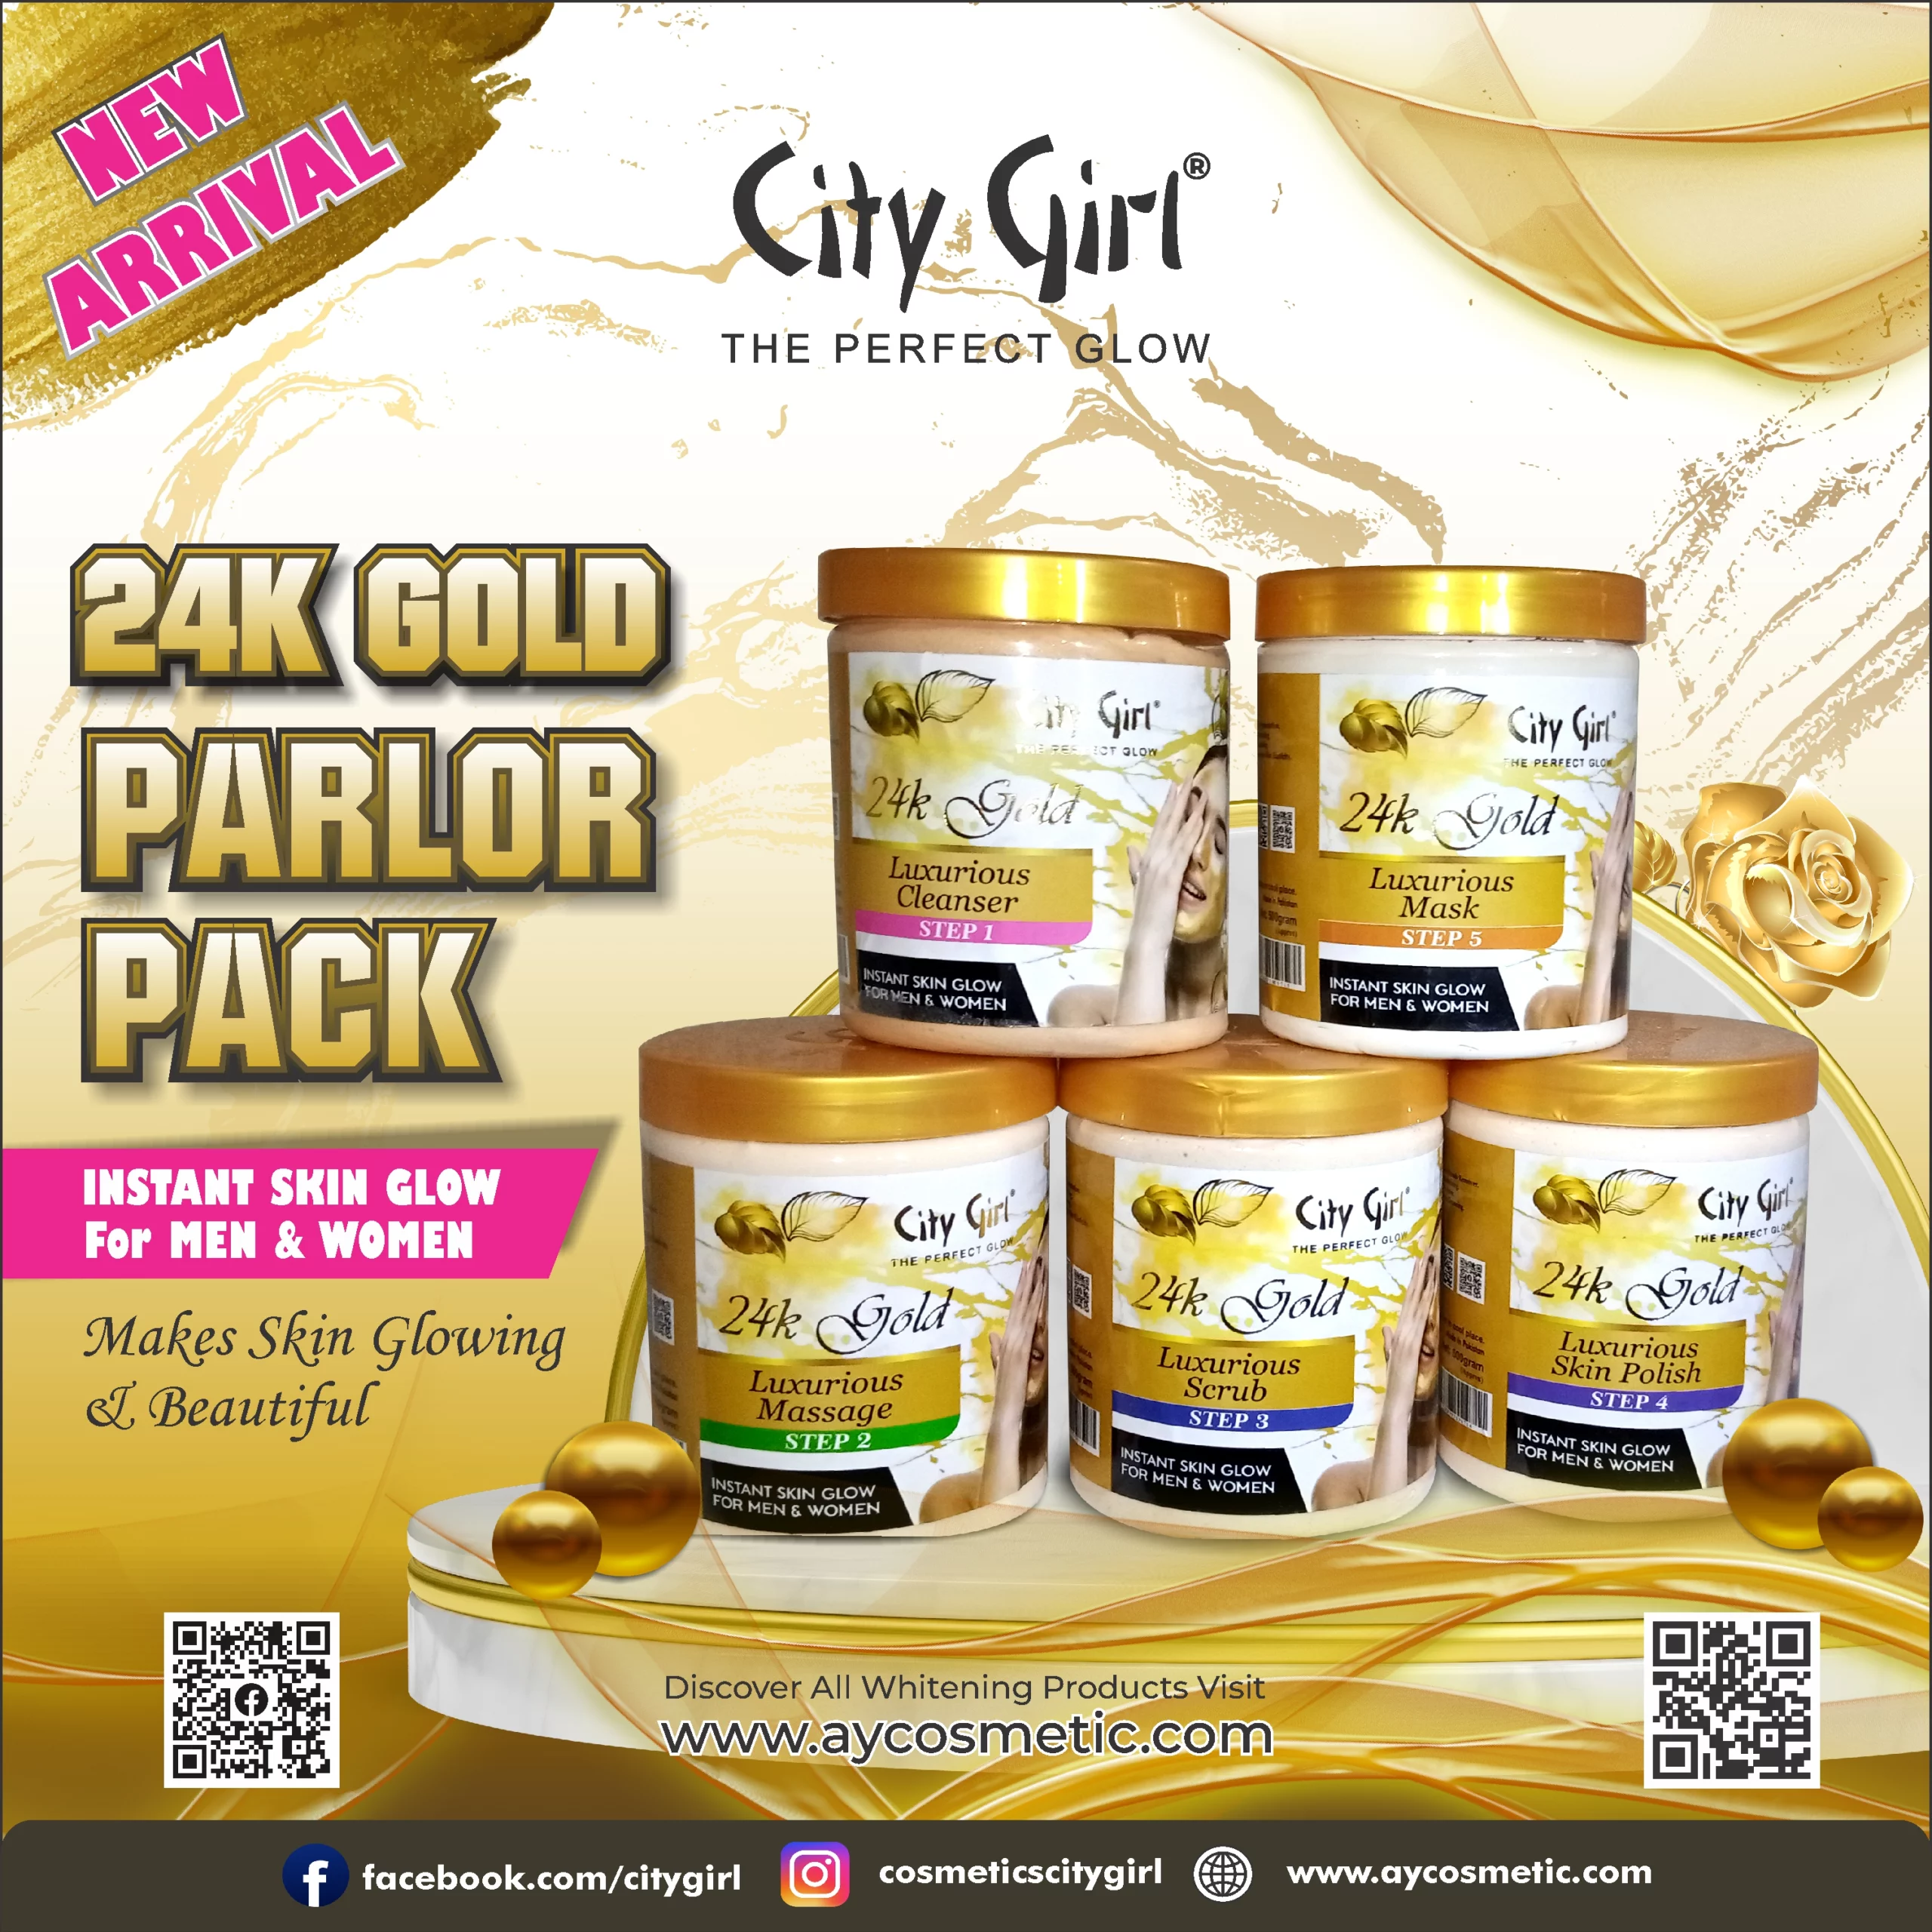 City Girl 24K Gold Facial Jar 500gm Parlor Pack